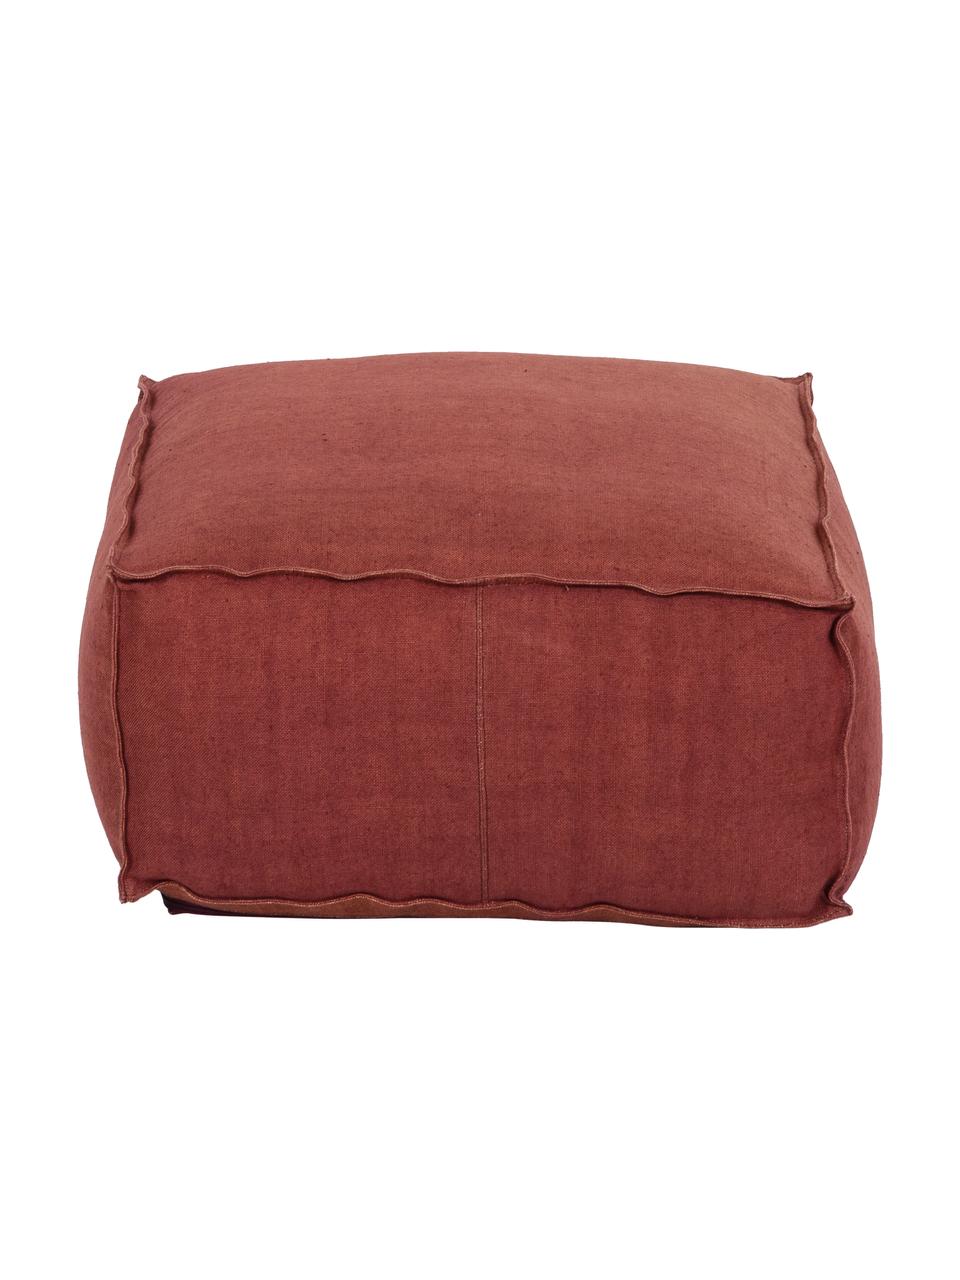 Cuscino da pavimento in lino rosso ruggine fatto a mano Zafferano, Rivestimento: 100% lino, Rosso ruggine, Larg. 50 x Alt. 25 cm